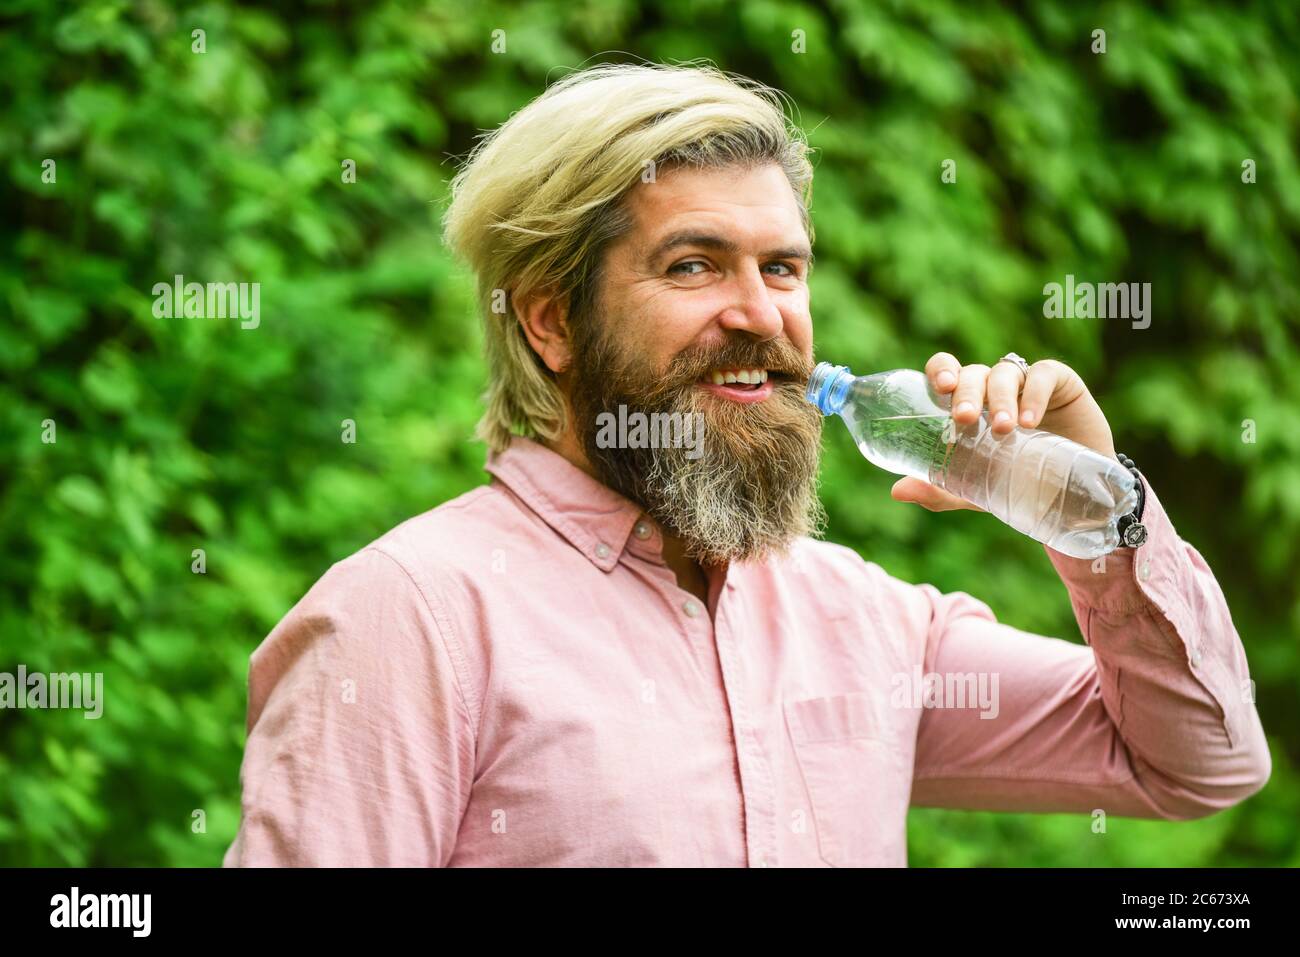 il faut boire un verre. un homme brutal boit de l'eau. un homme barbu tient une bouteille d'eau en plastique. il a soif. buvez un peu d'eau en marchant dans le parc. rafraîchissez-vous. Maintenir l'équilibre de l'eau dans le corps. Banque D'Images